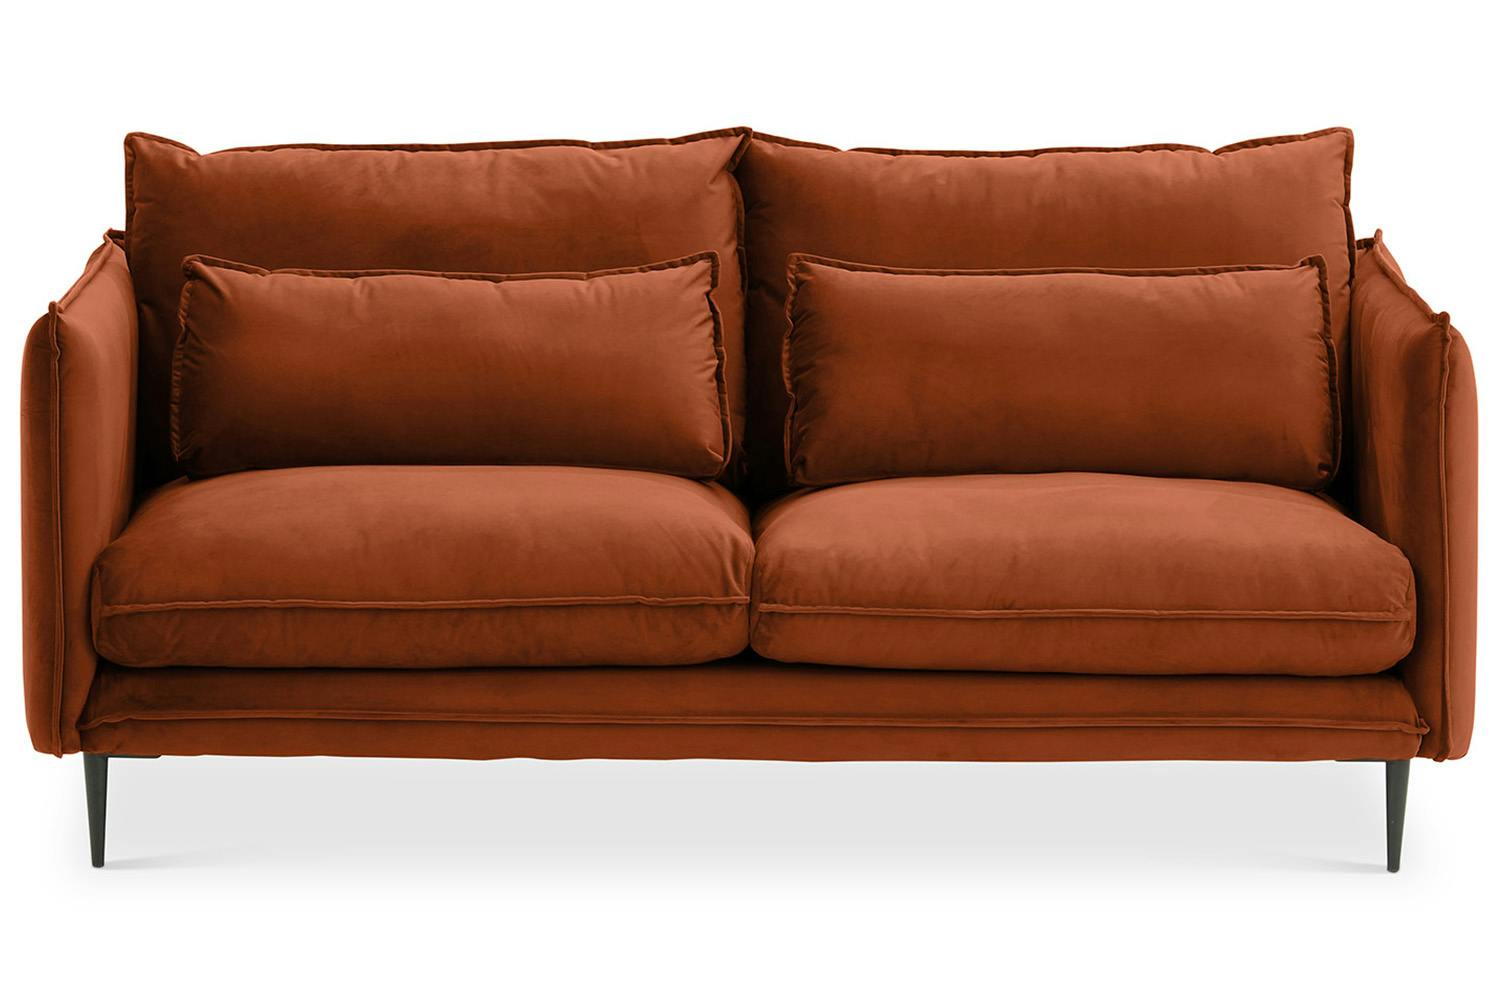 Maeve 2 Seater Sofa